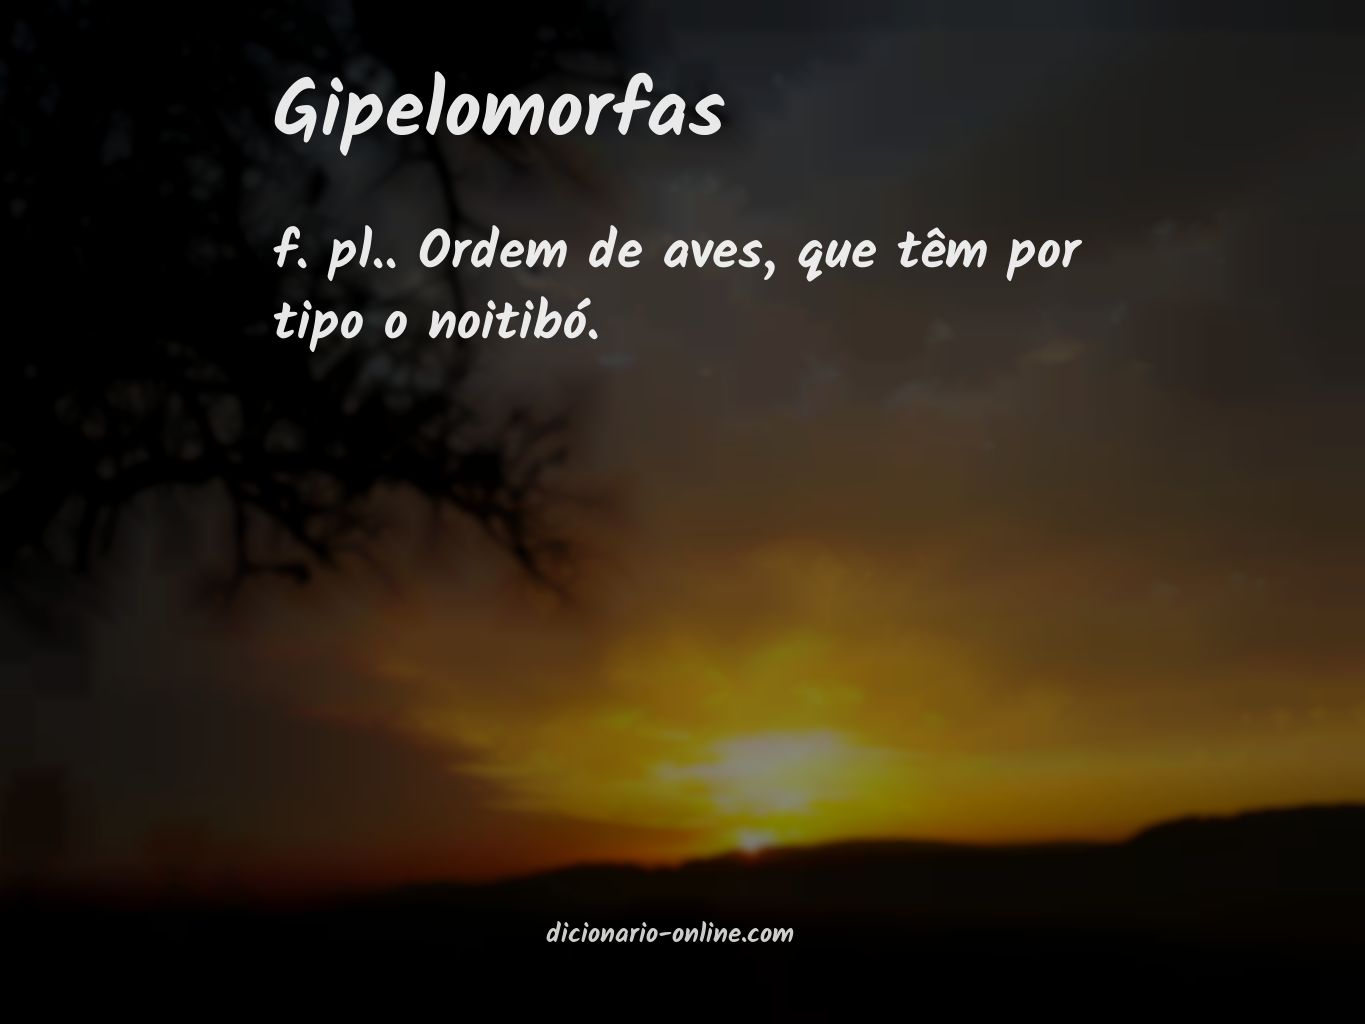 Significado de gipelomorfas